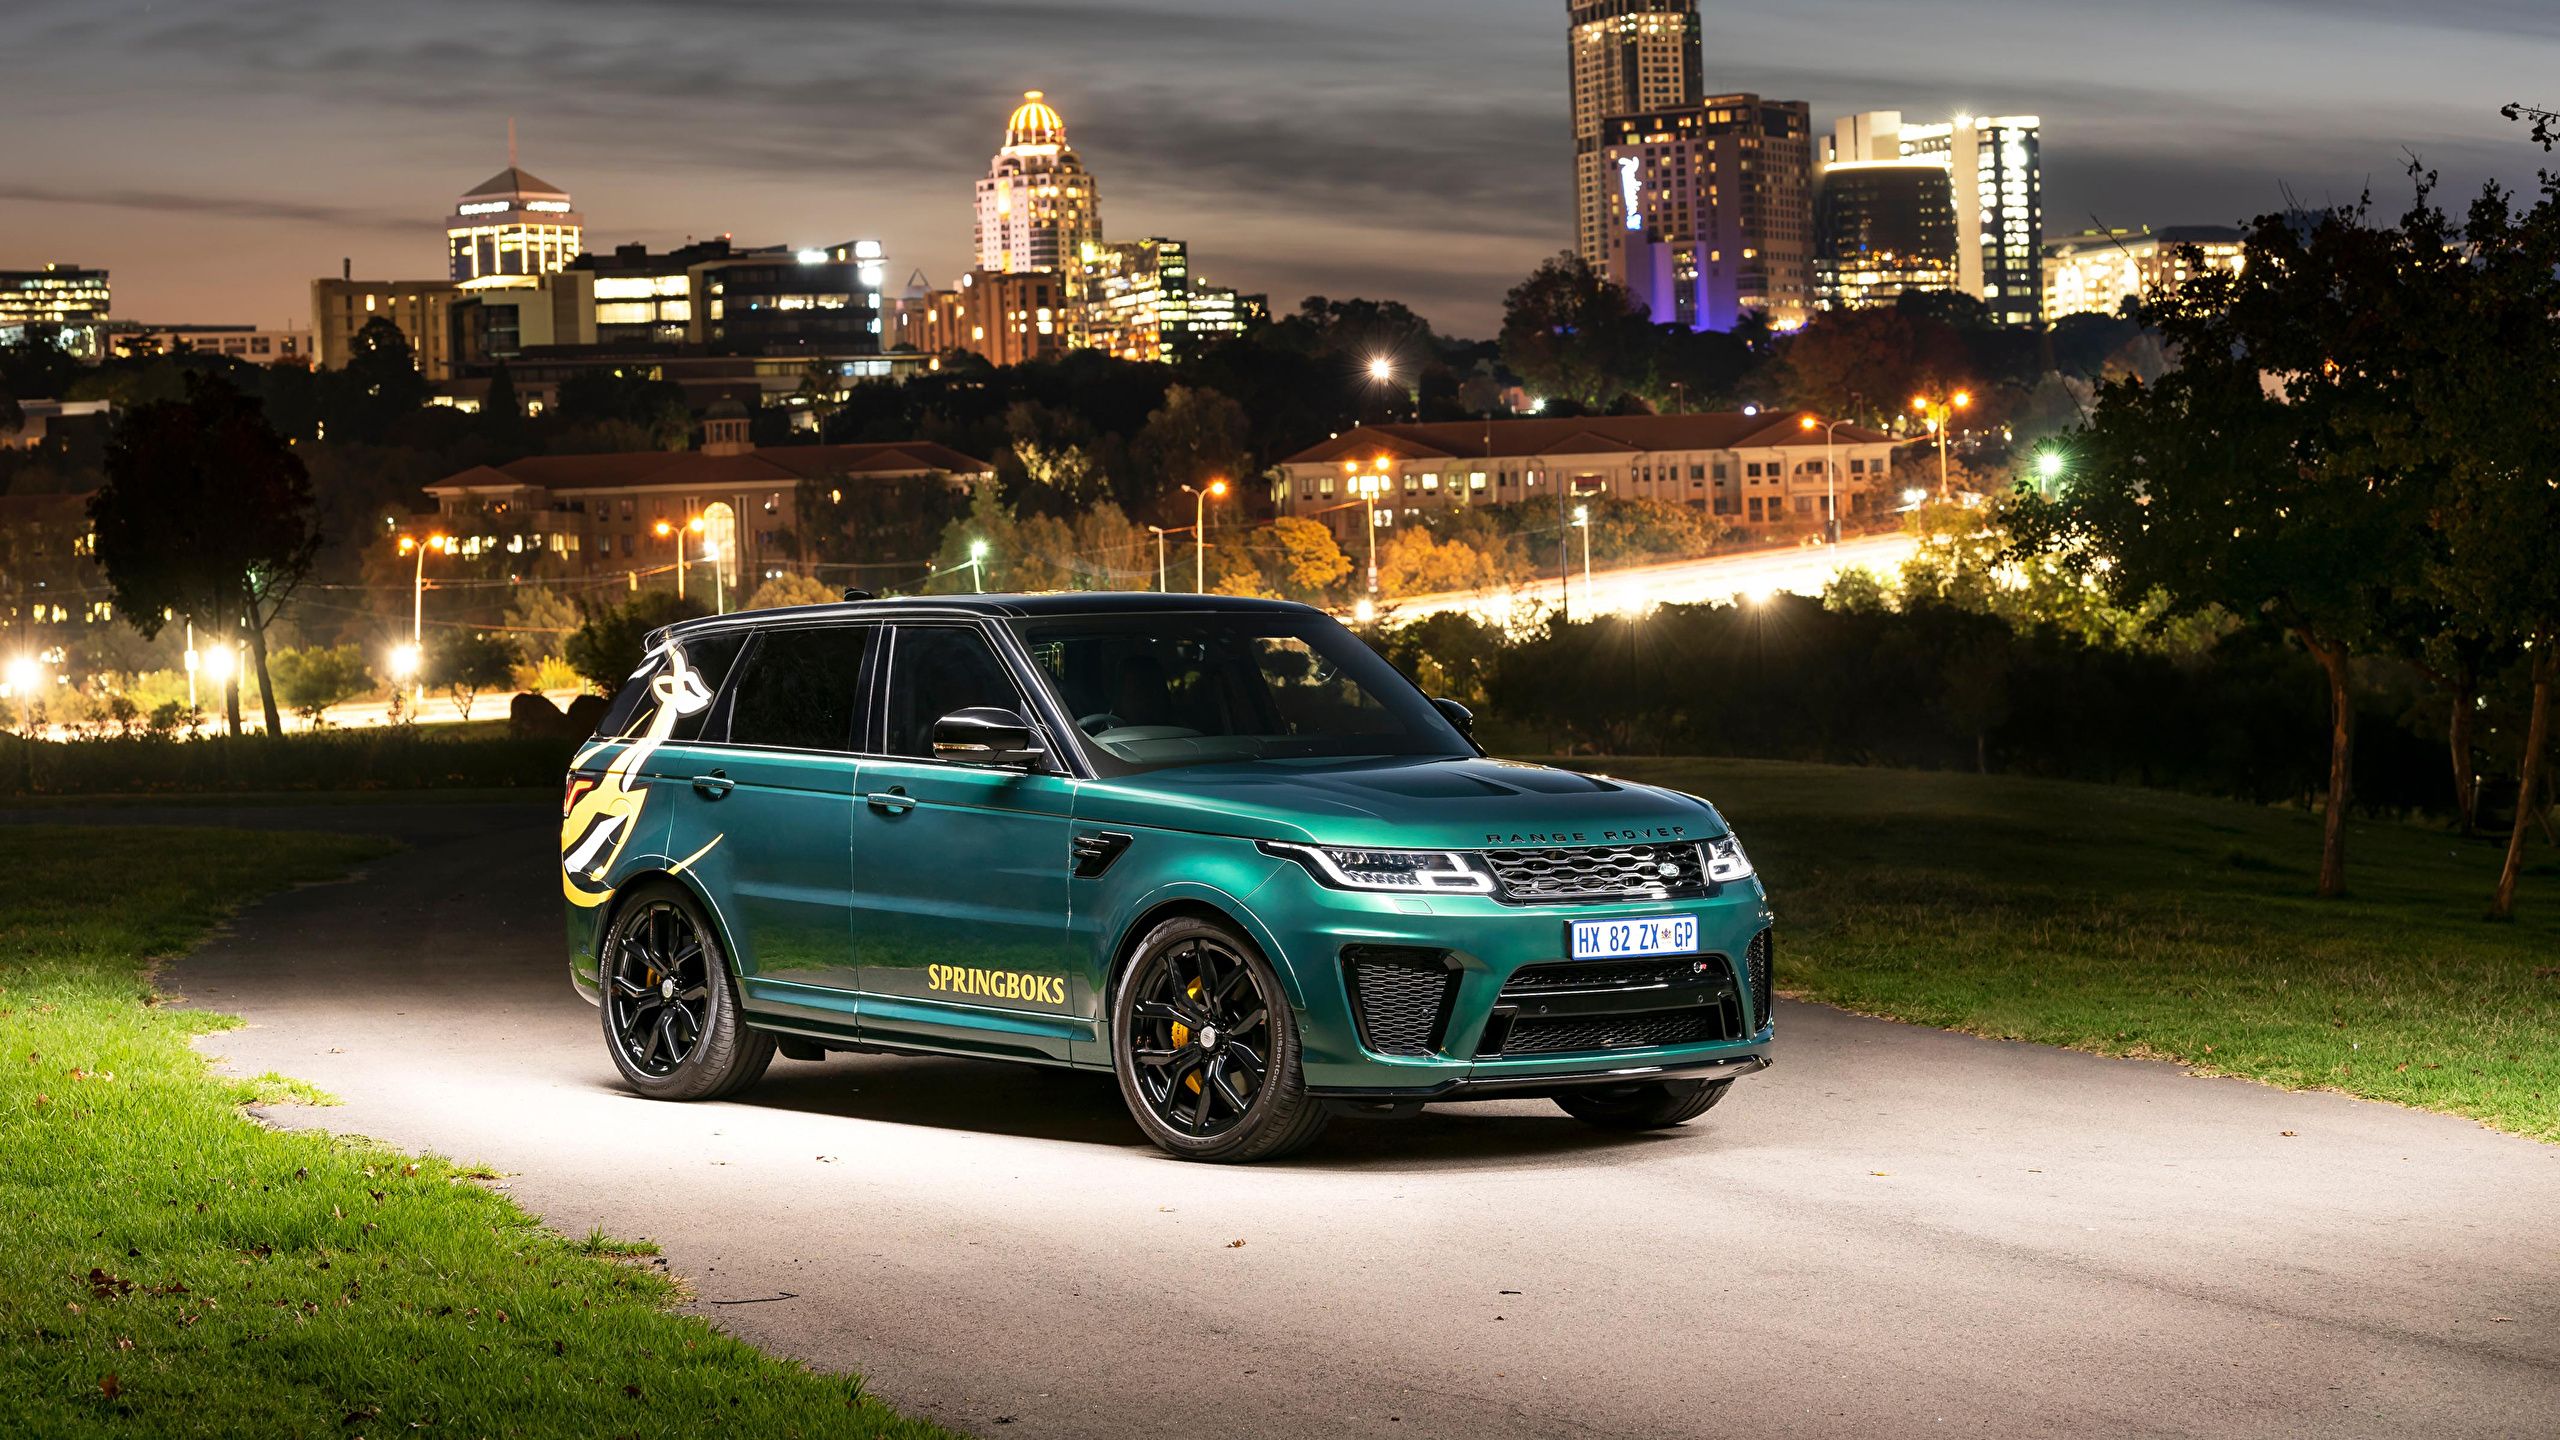 Wallpaper Tuning Land Rover 2019 Sport SVR Springboks